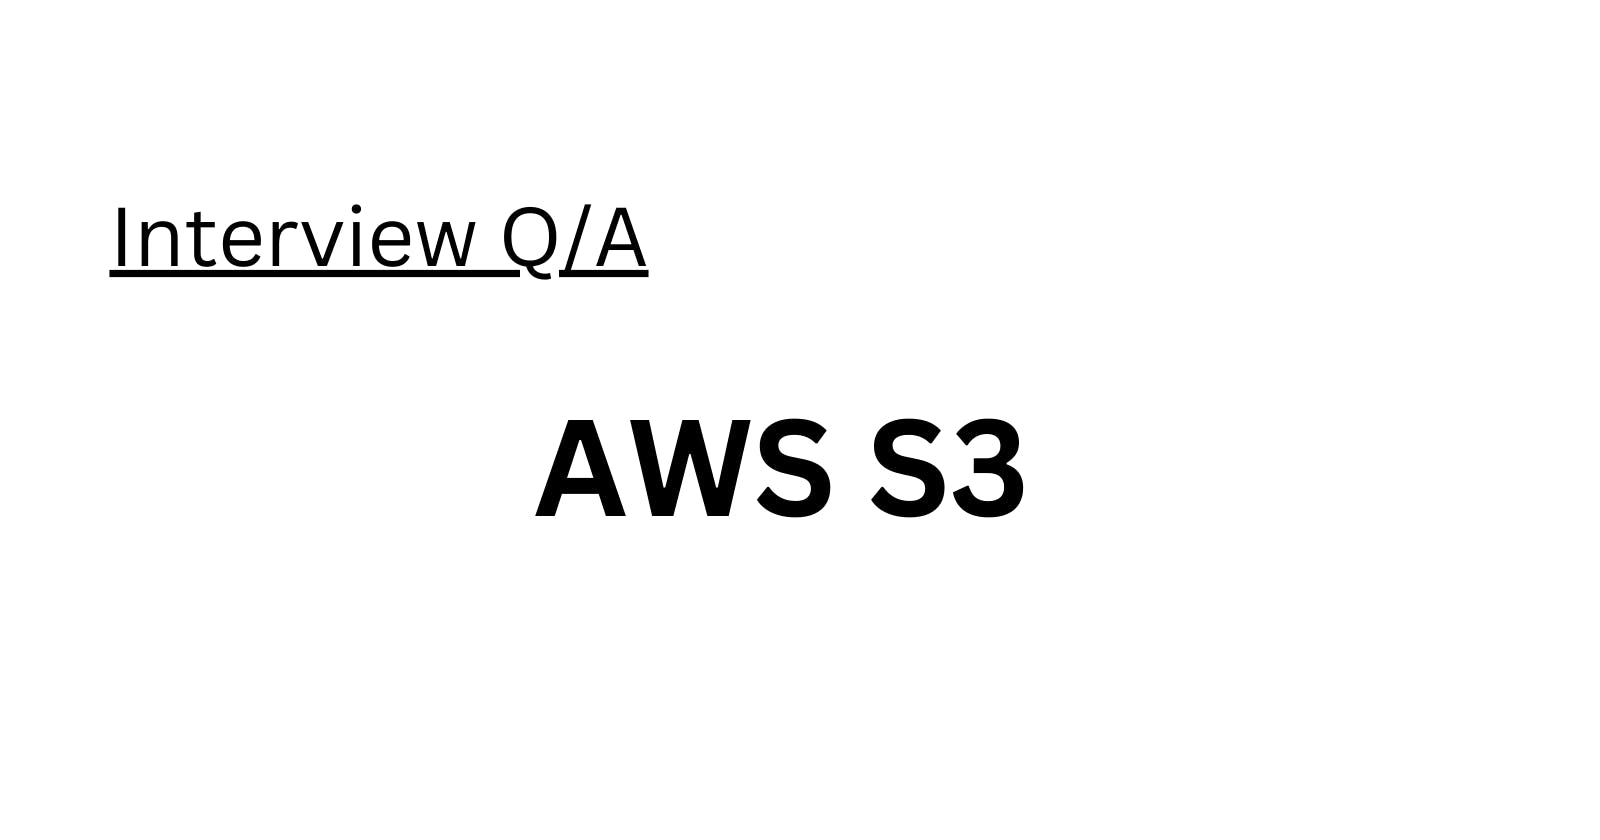 AWS S3 Interview Q/A